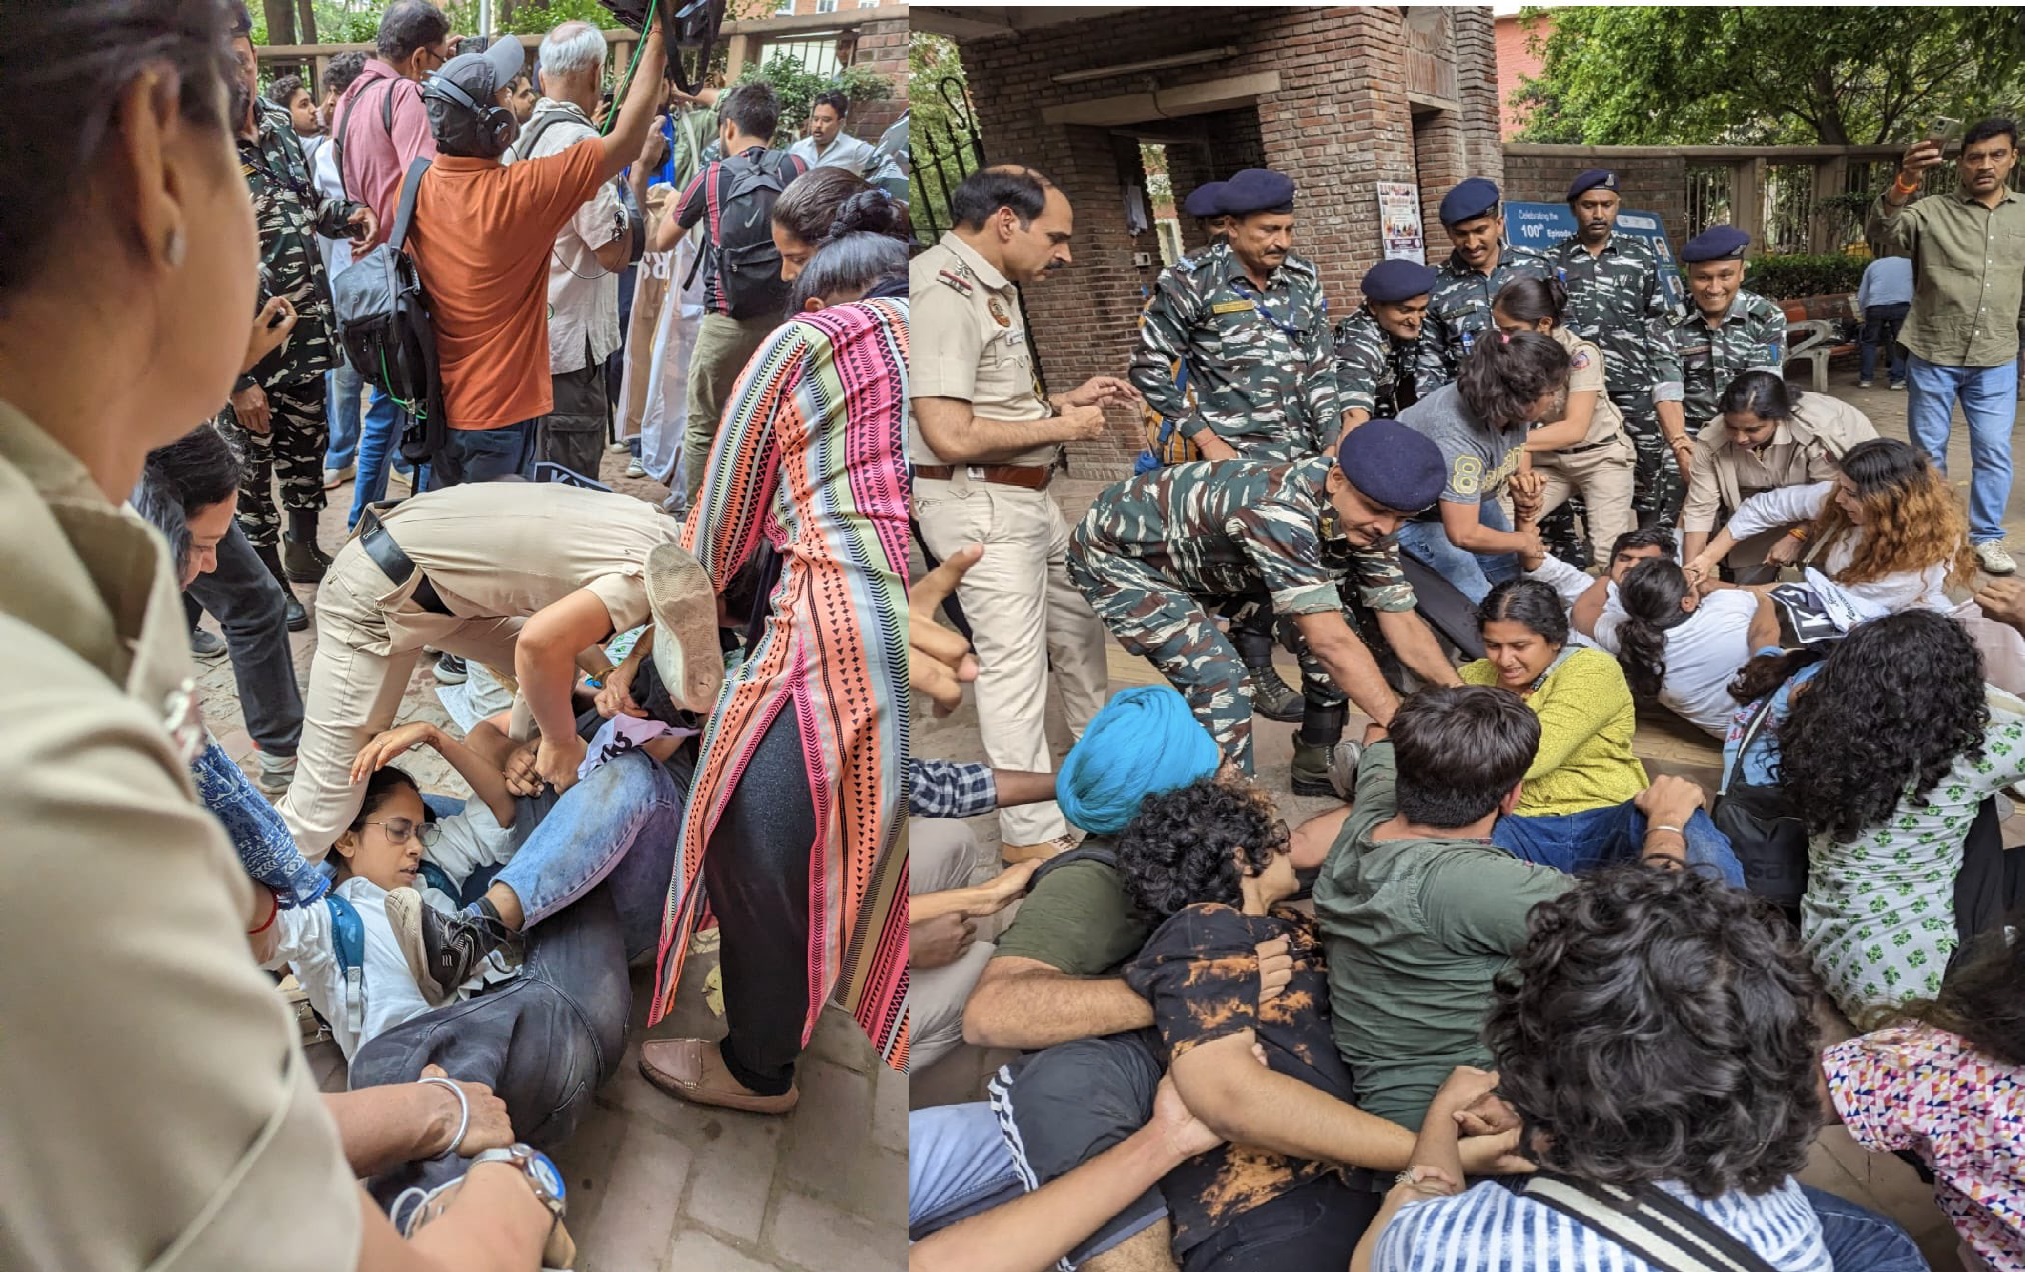 रेसलर्स के समर्थन में दिल्ली यूनिवर्सिटी की छात्राओं ने किया मार्च, तो पुलिस ने छात्राओं को घसीटा,कपड़े फटे